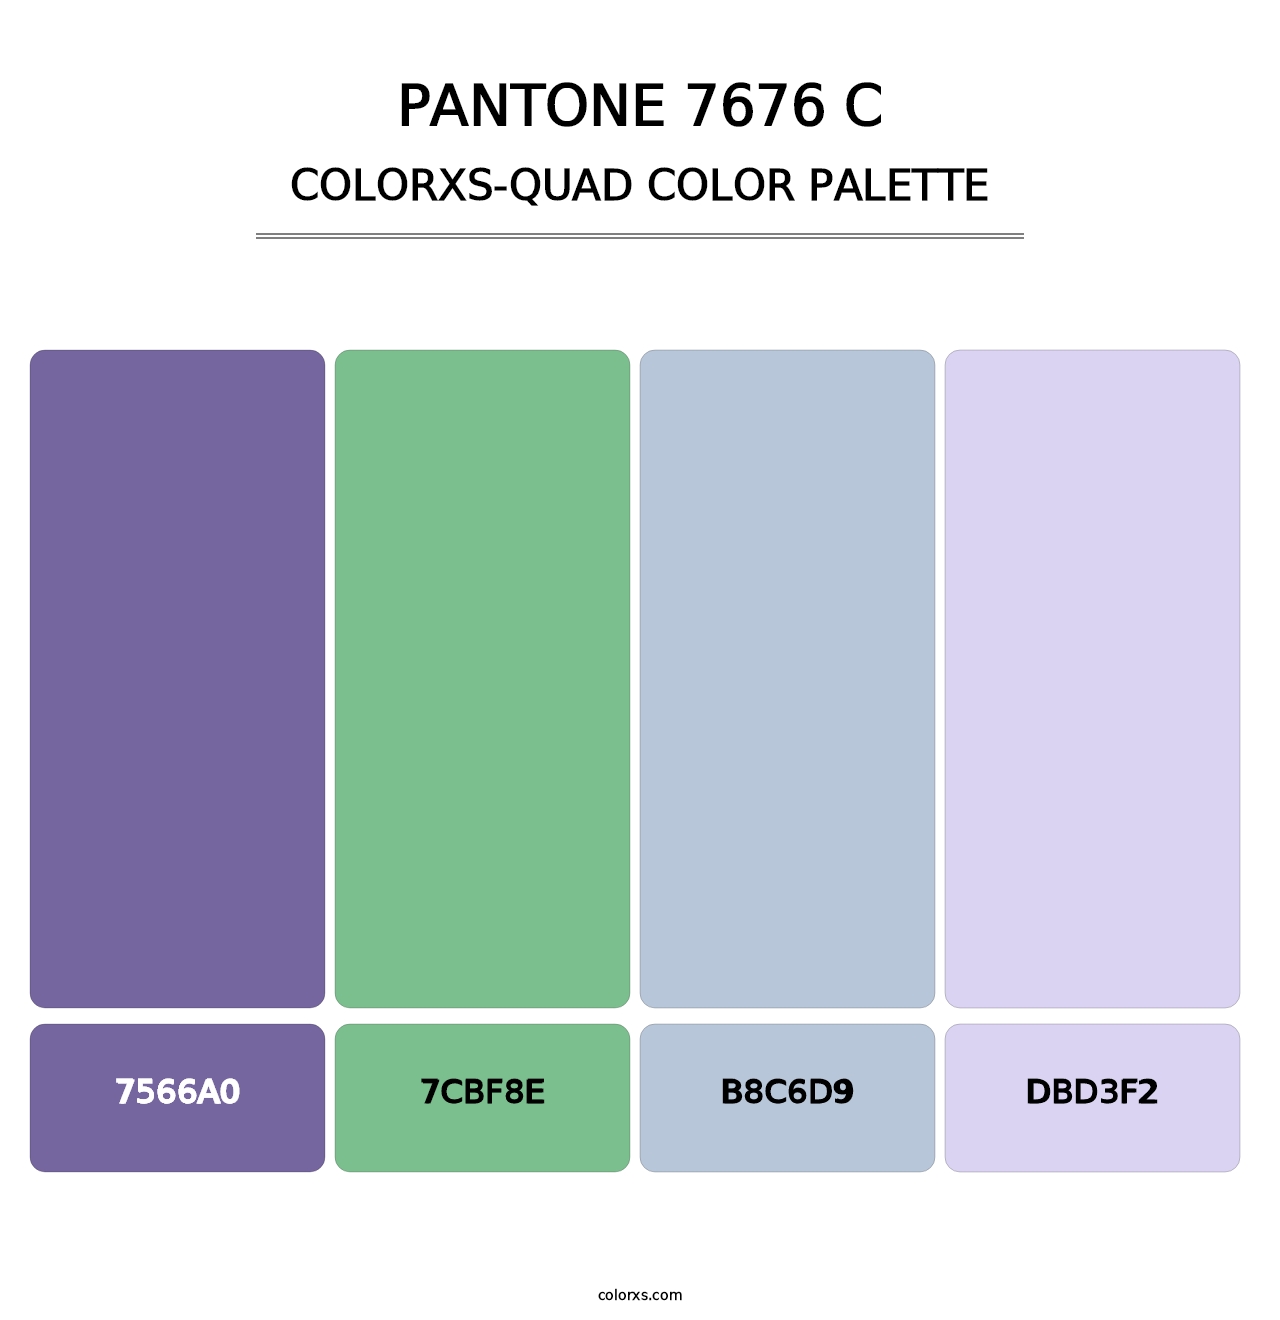 PANTONE 7676 C - Colorxs Quad Palette